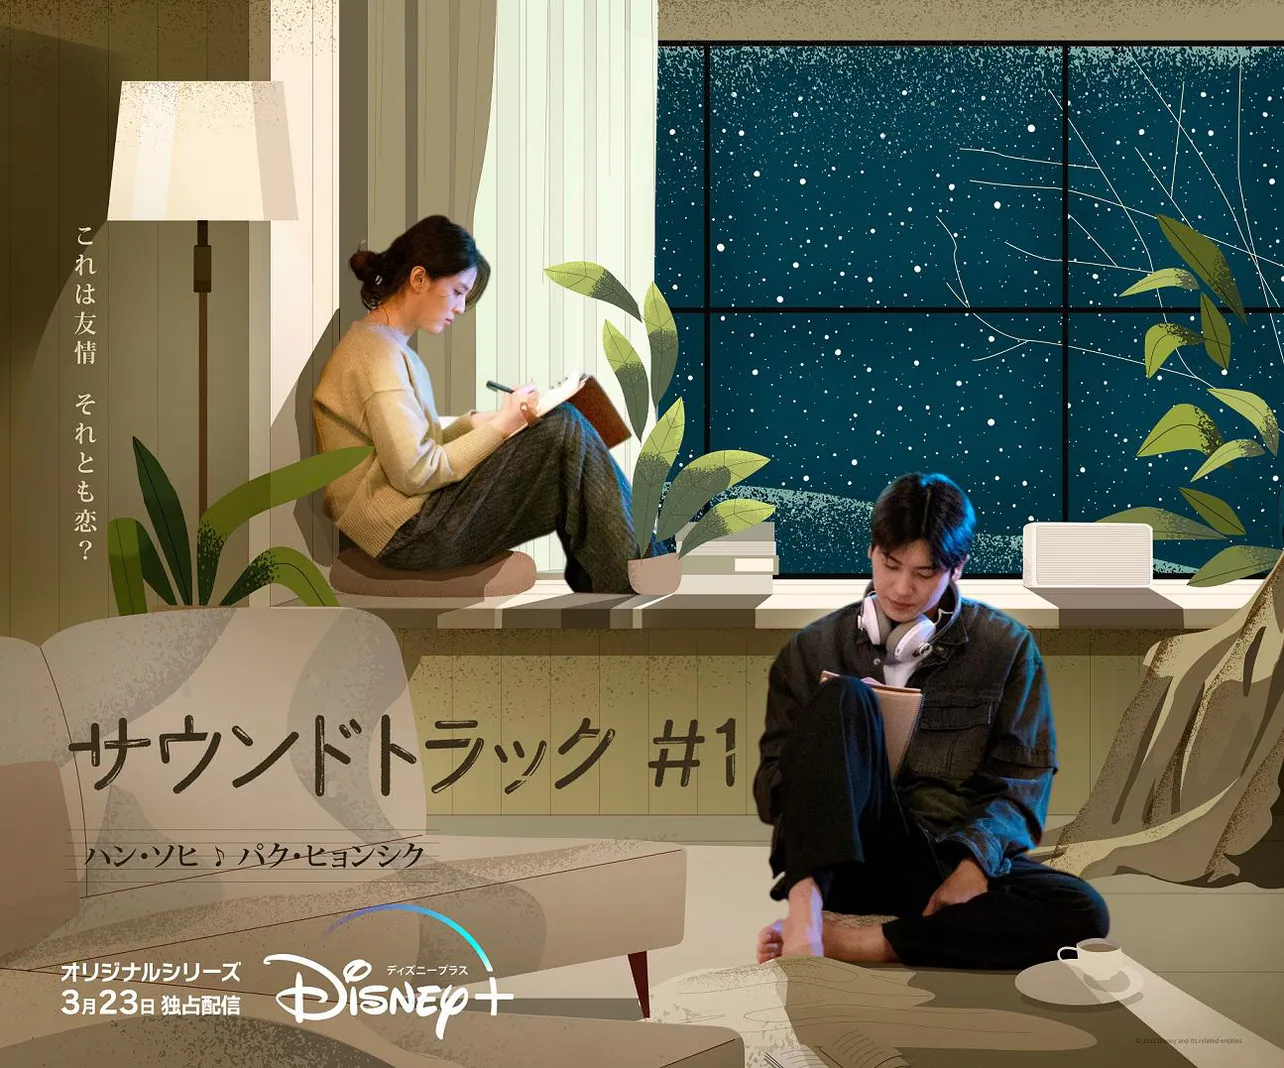 「サウンドトラック #1」の“日本語版”特別映像とキャラクターポスターが公開